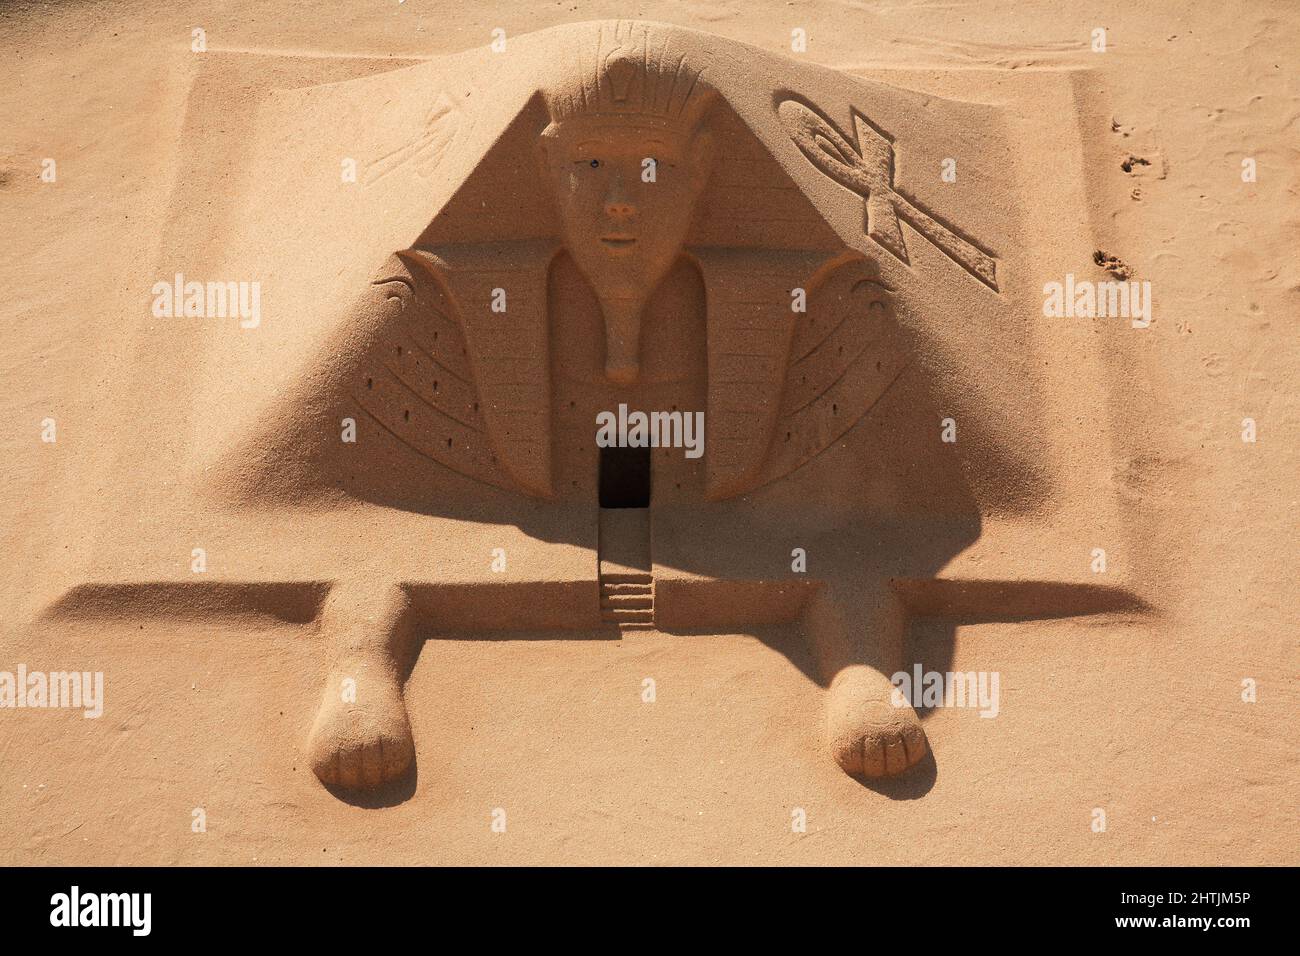 Skulptur aus Sand, Sandkunst, ägyptisches Motiv Stock Photo